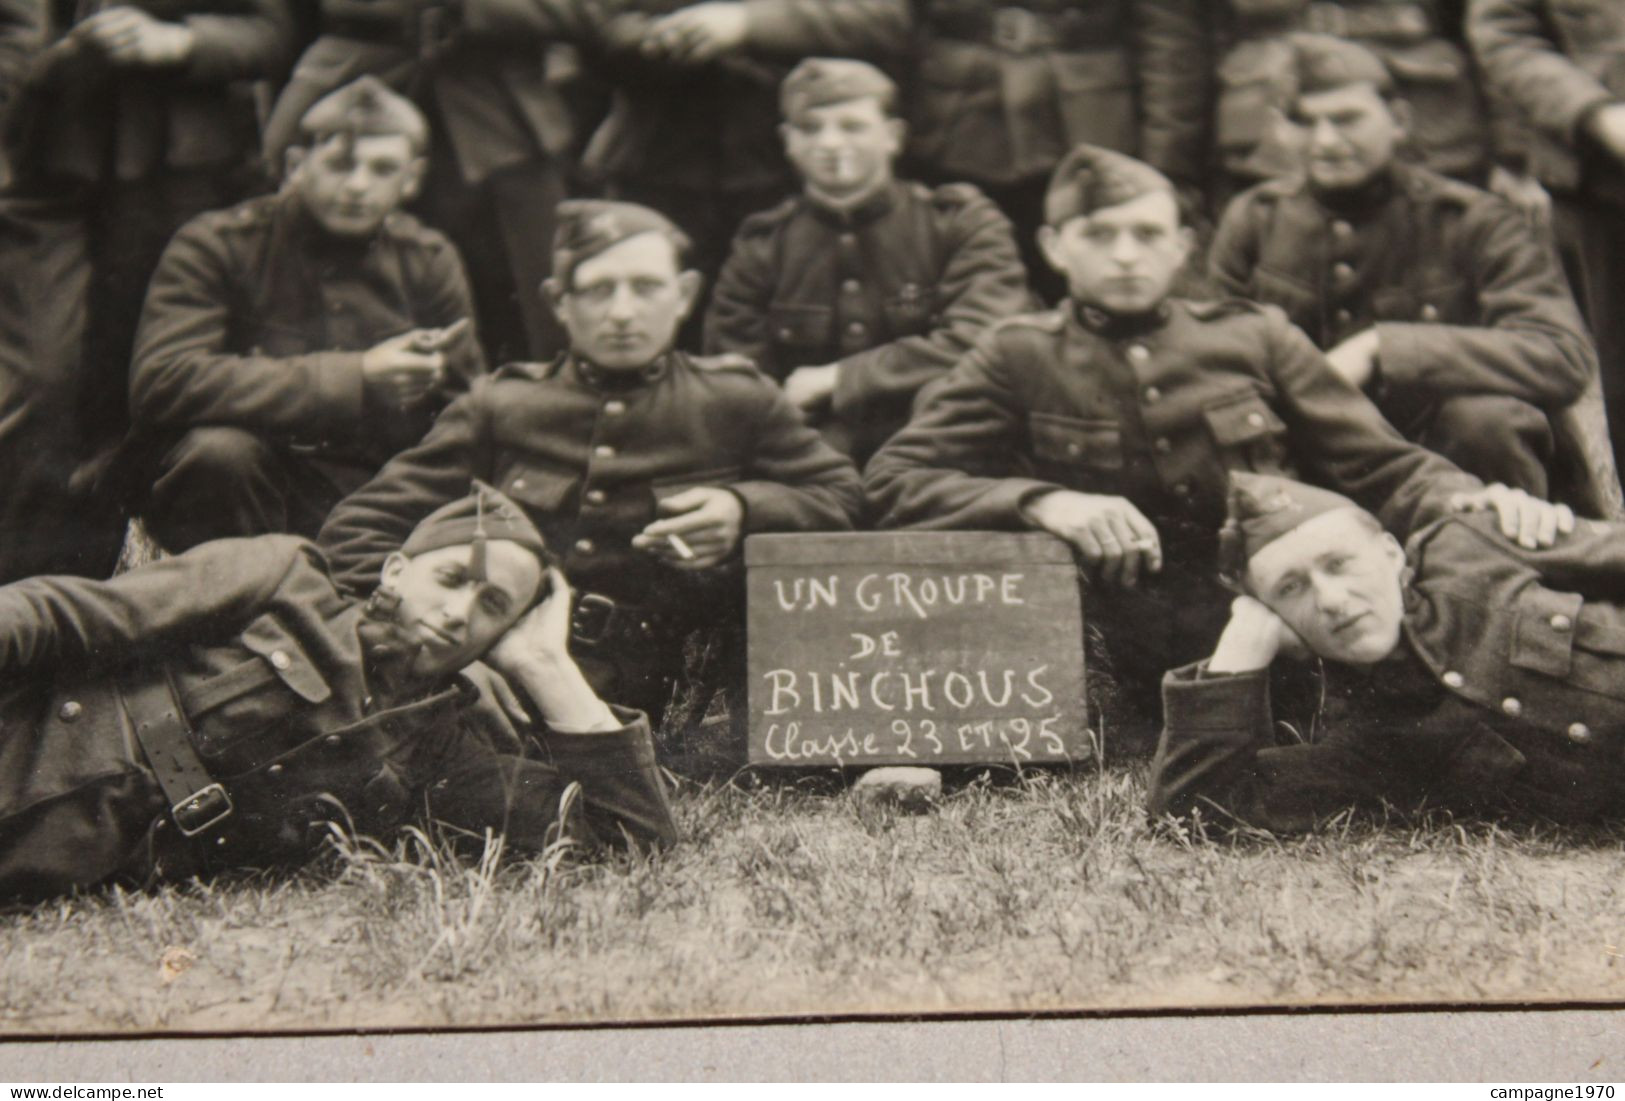 CPA PHOTO MILITARIA - BINCHE - UN GROUPE DE BINCHOUS - CLASSE 23 ET 25 ( SOLDATS A IDENTIFIER ) - Binche